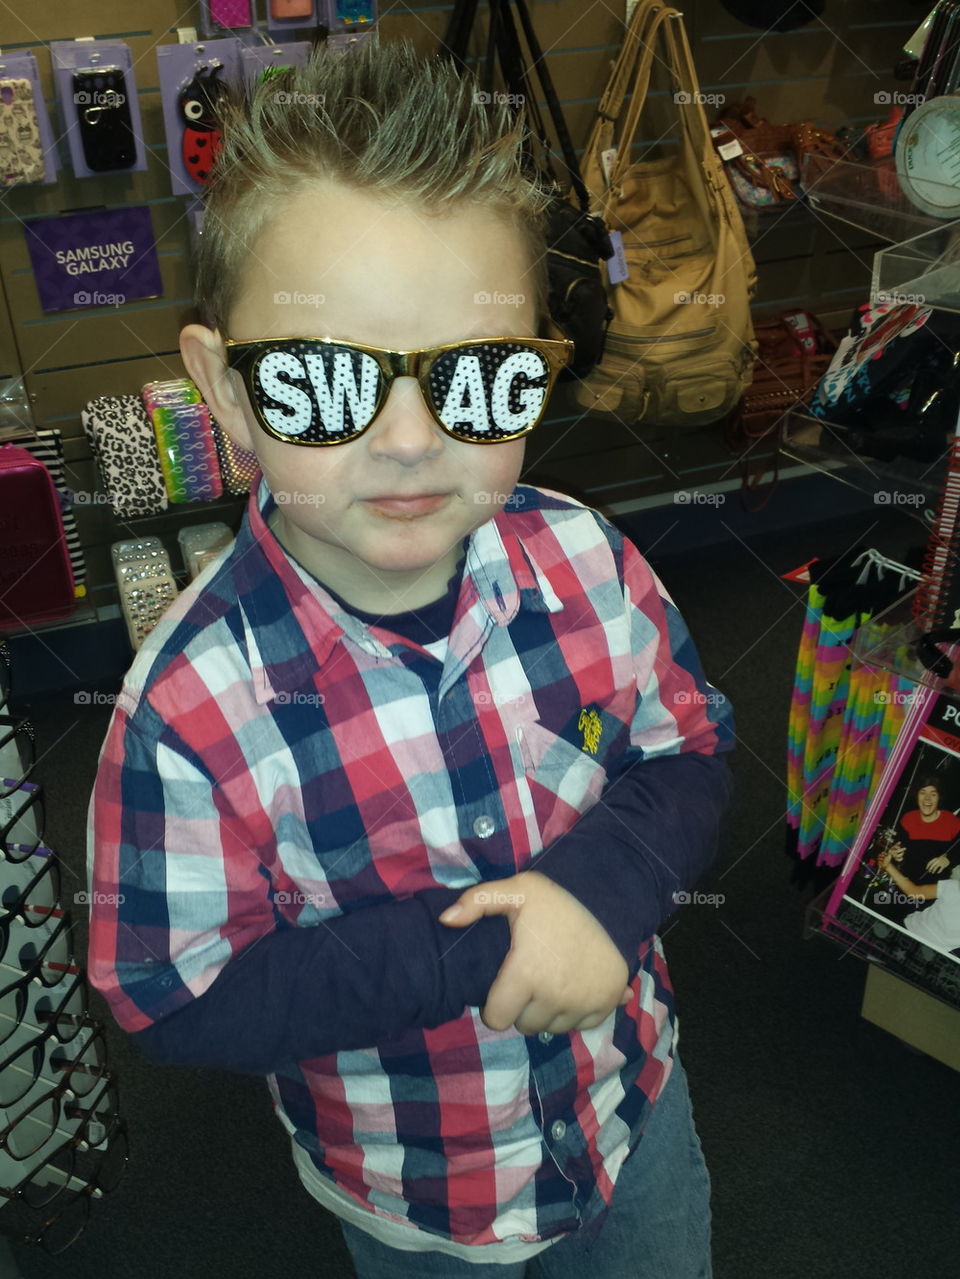 Kid got Swag